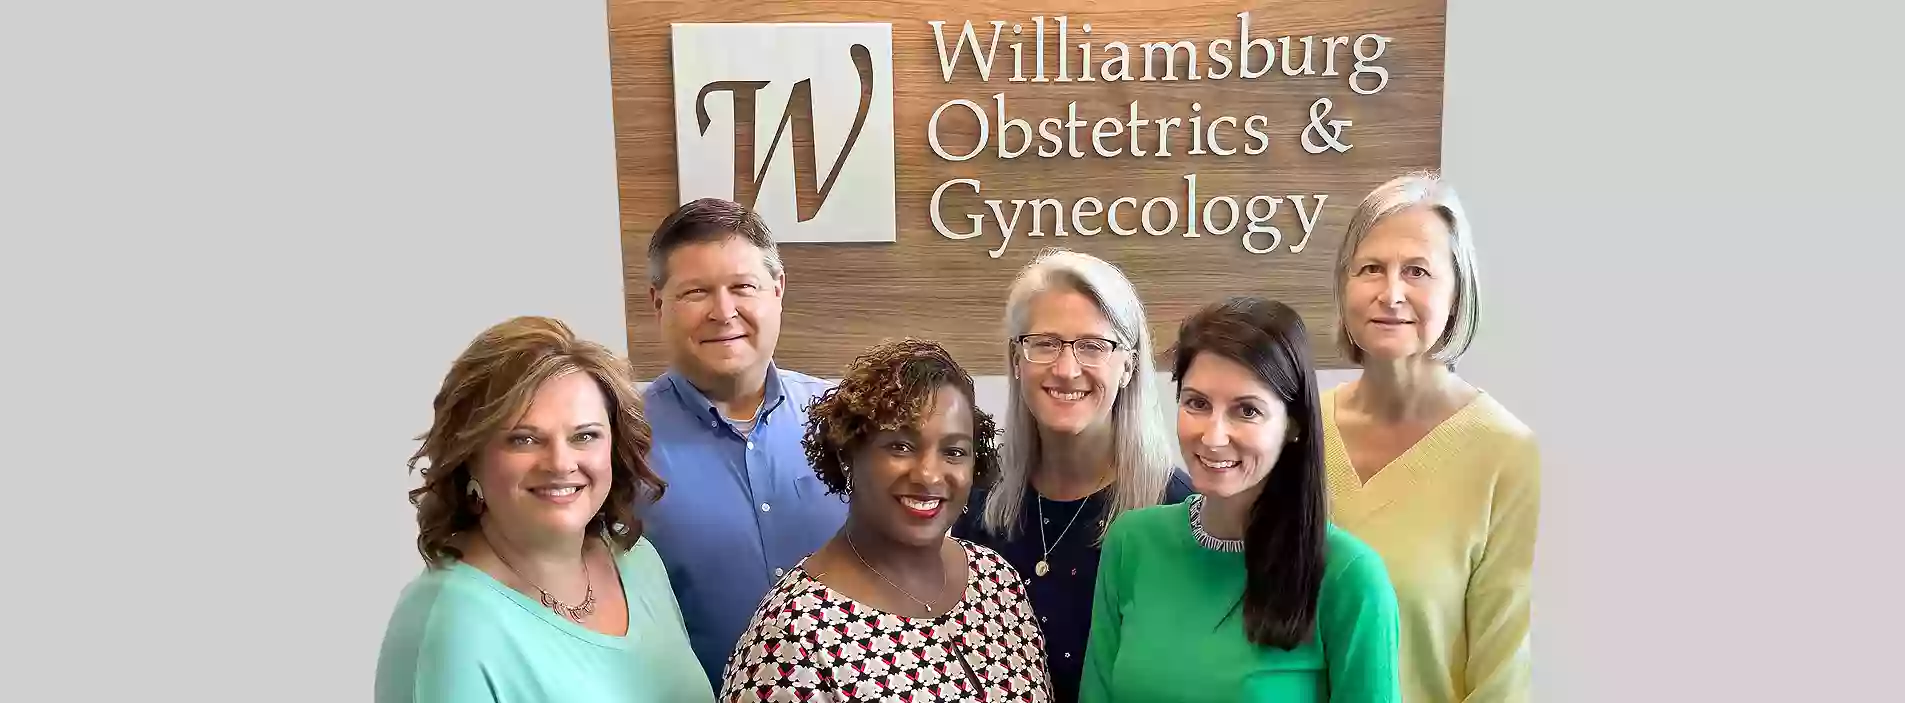 Williamsburg Obstetrics